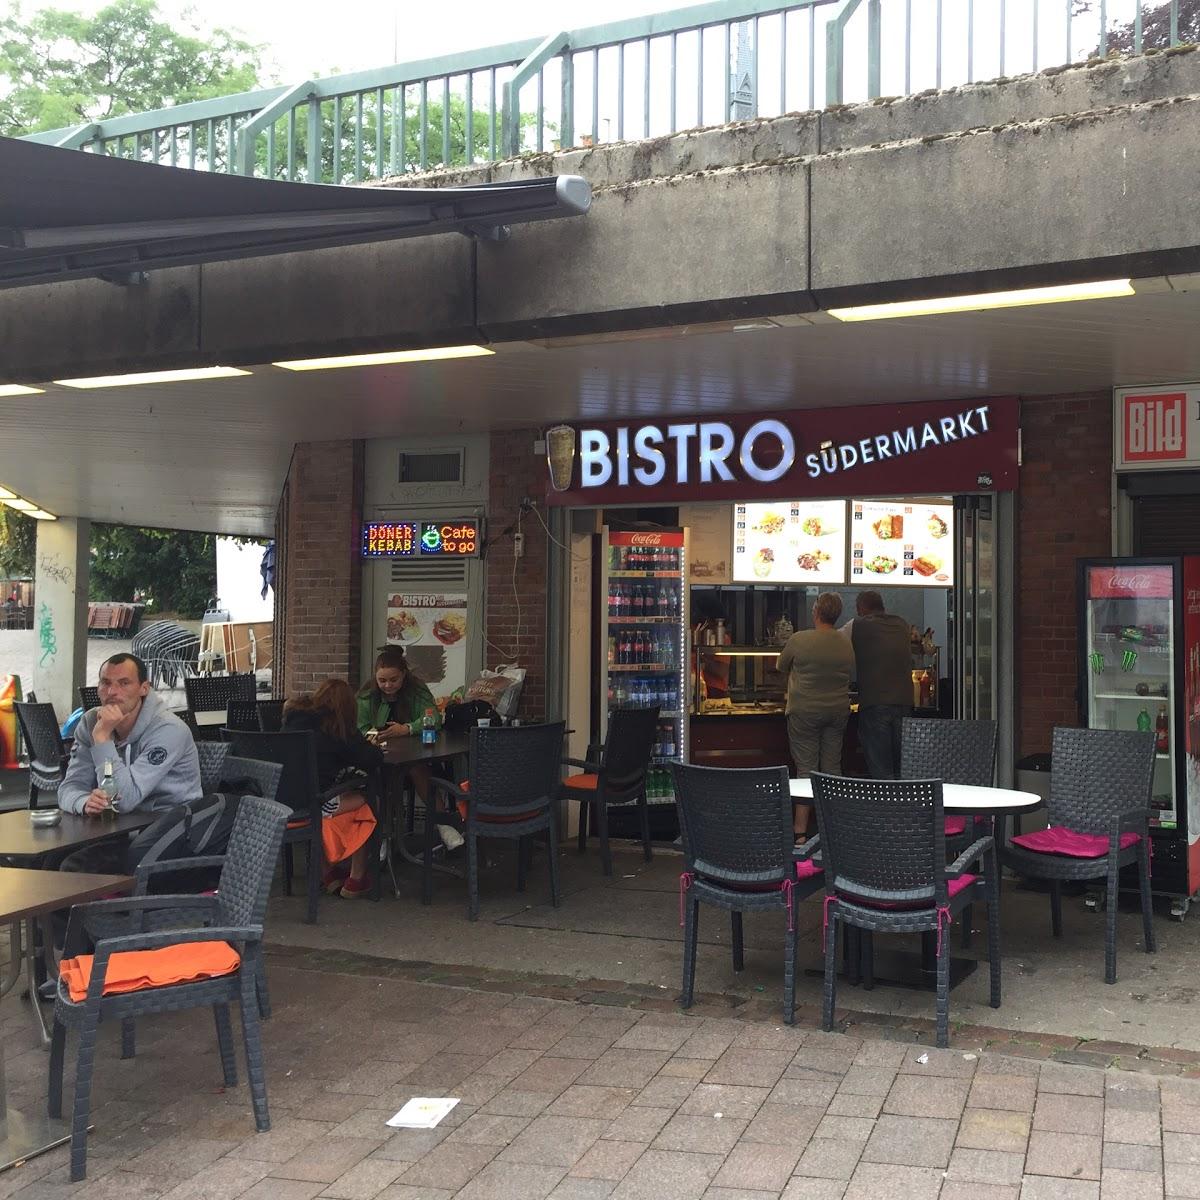 Restaurant "Bistro am Südermarkt" in Flensburg